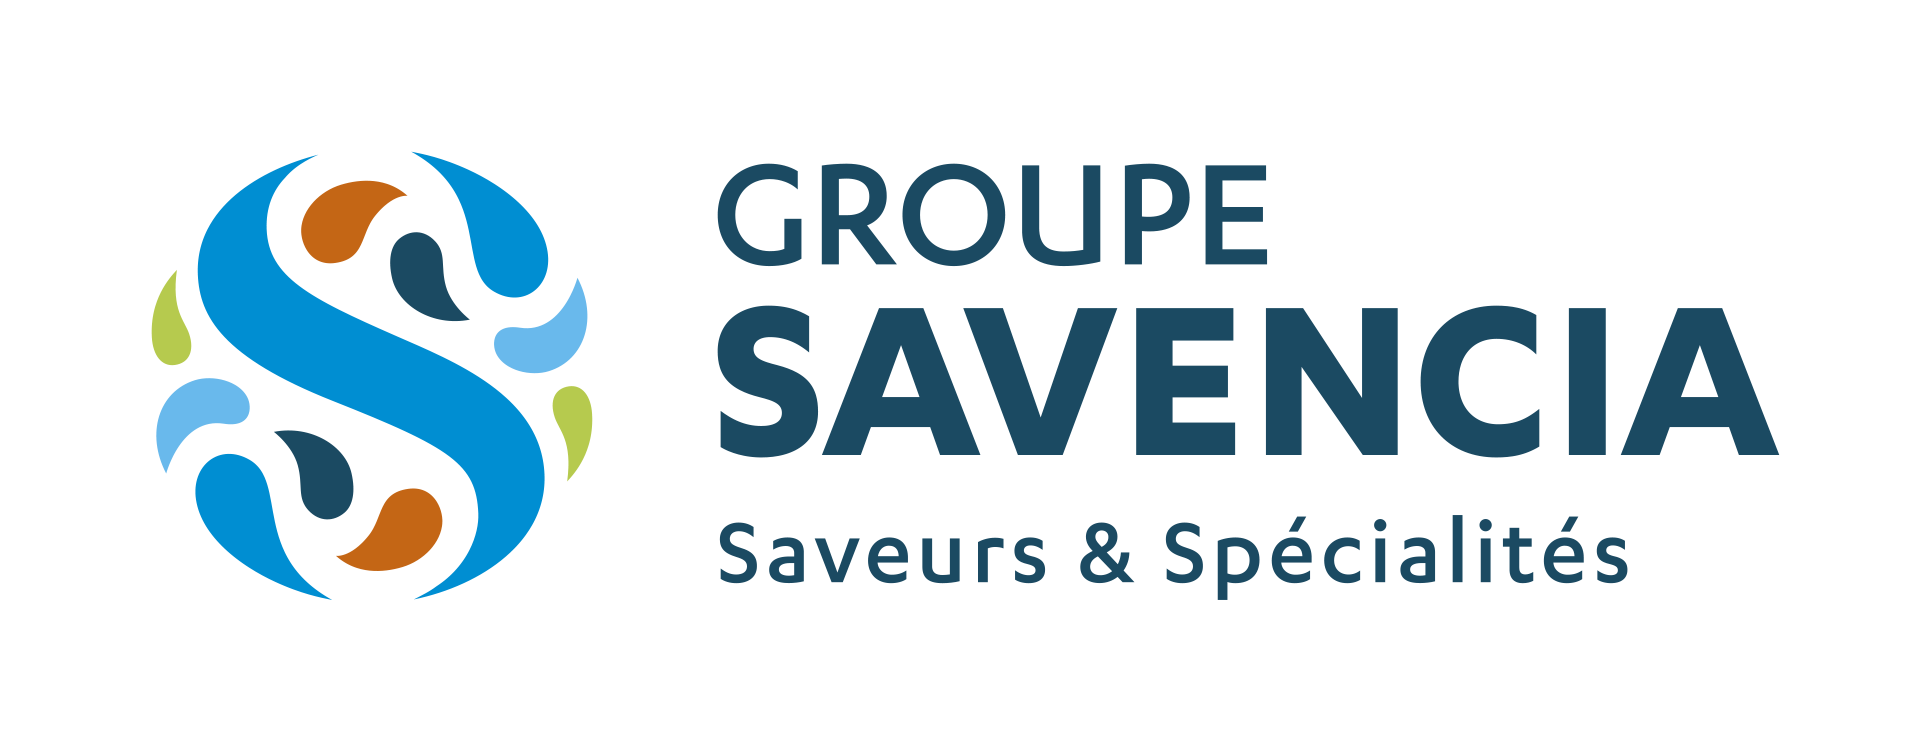 Groupe_savencia_rvb.png